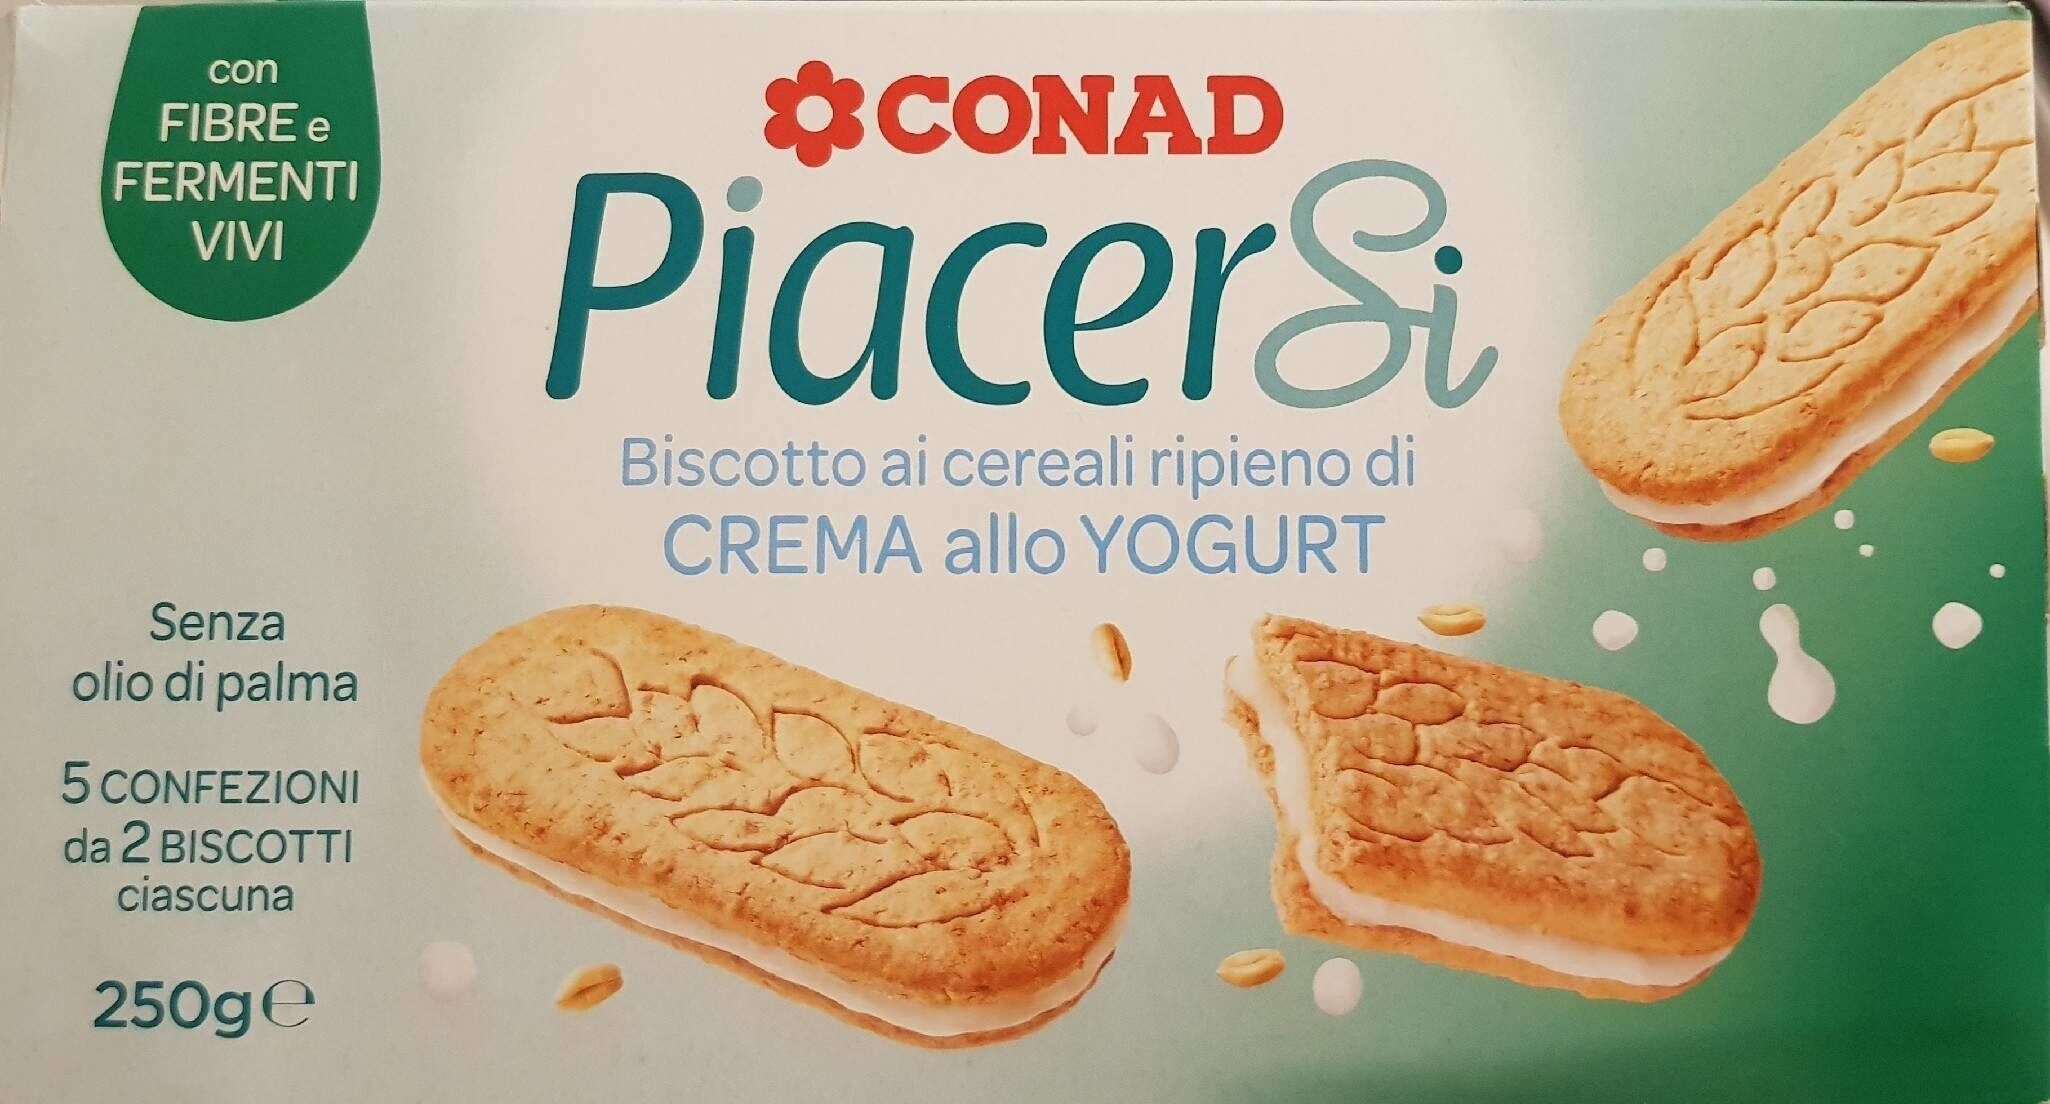 PiacerSi Biscotto ai cereali ripieno di CREMA allo YOGURT - Product - it